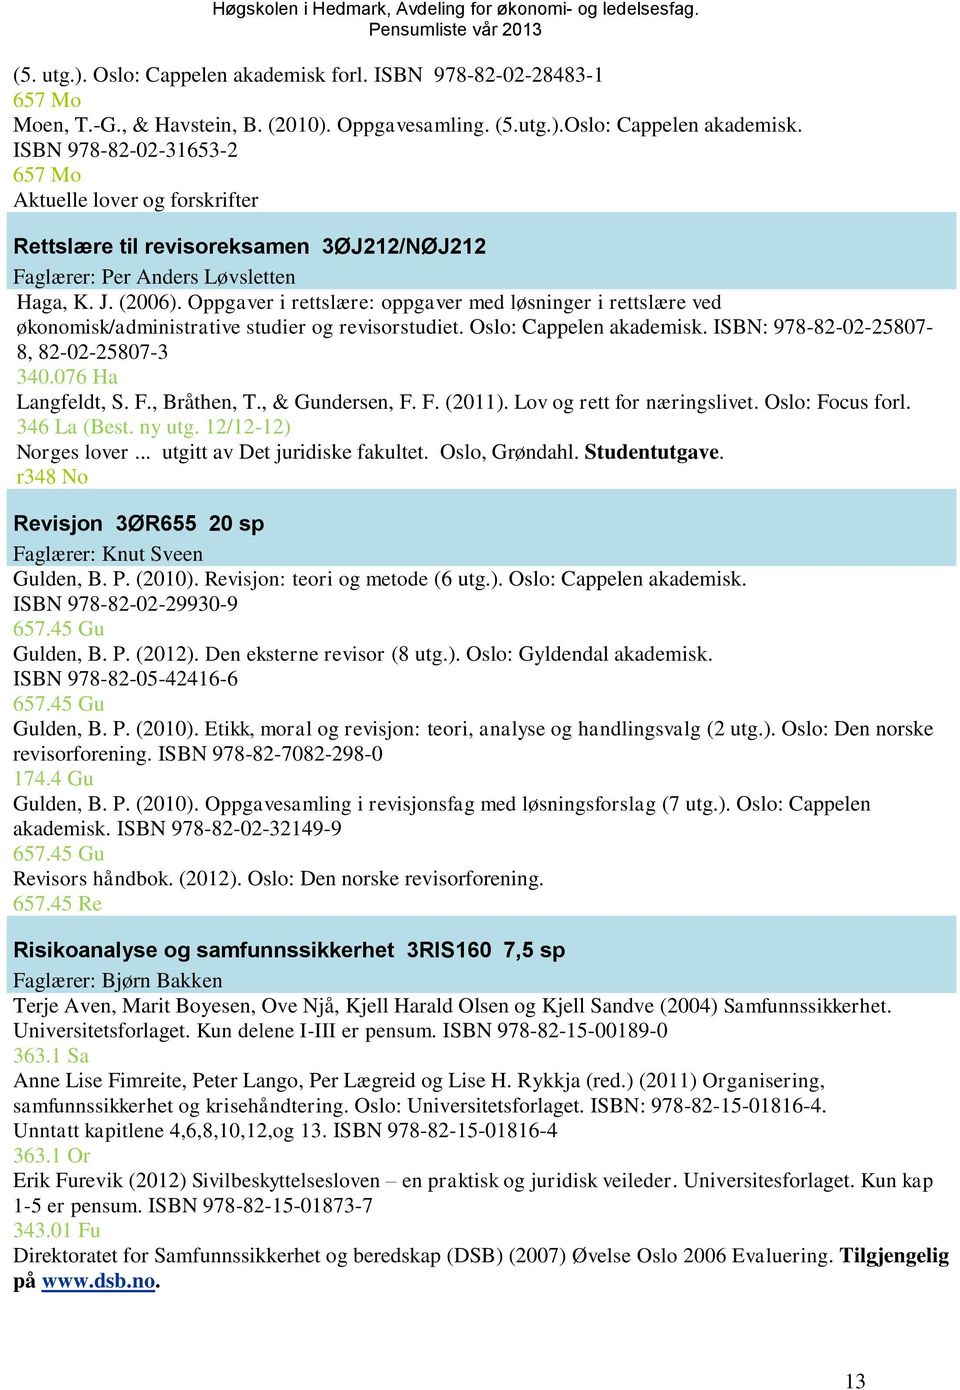 076 Ha Langfeldt, S. F., Bråthen, T., & Gundersen, F. F. (2011). Lov og rett for næringslivet. Oslo: Focus forl. 346 La (Best. ny utg. 12/12-12) Norges lover... utgitt av Det juridiske fakultet.